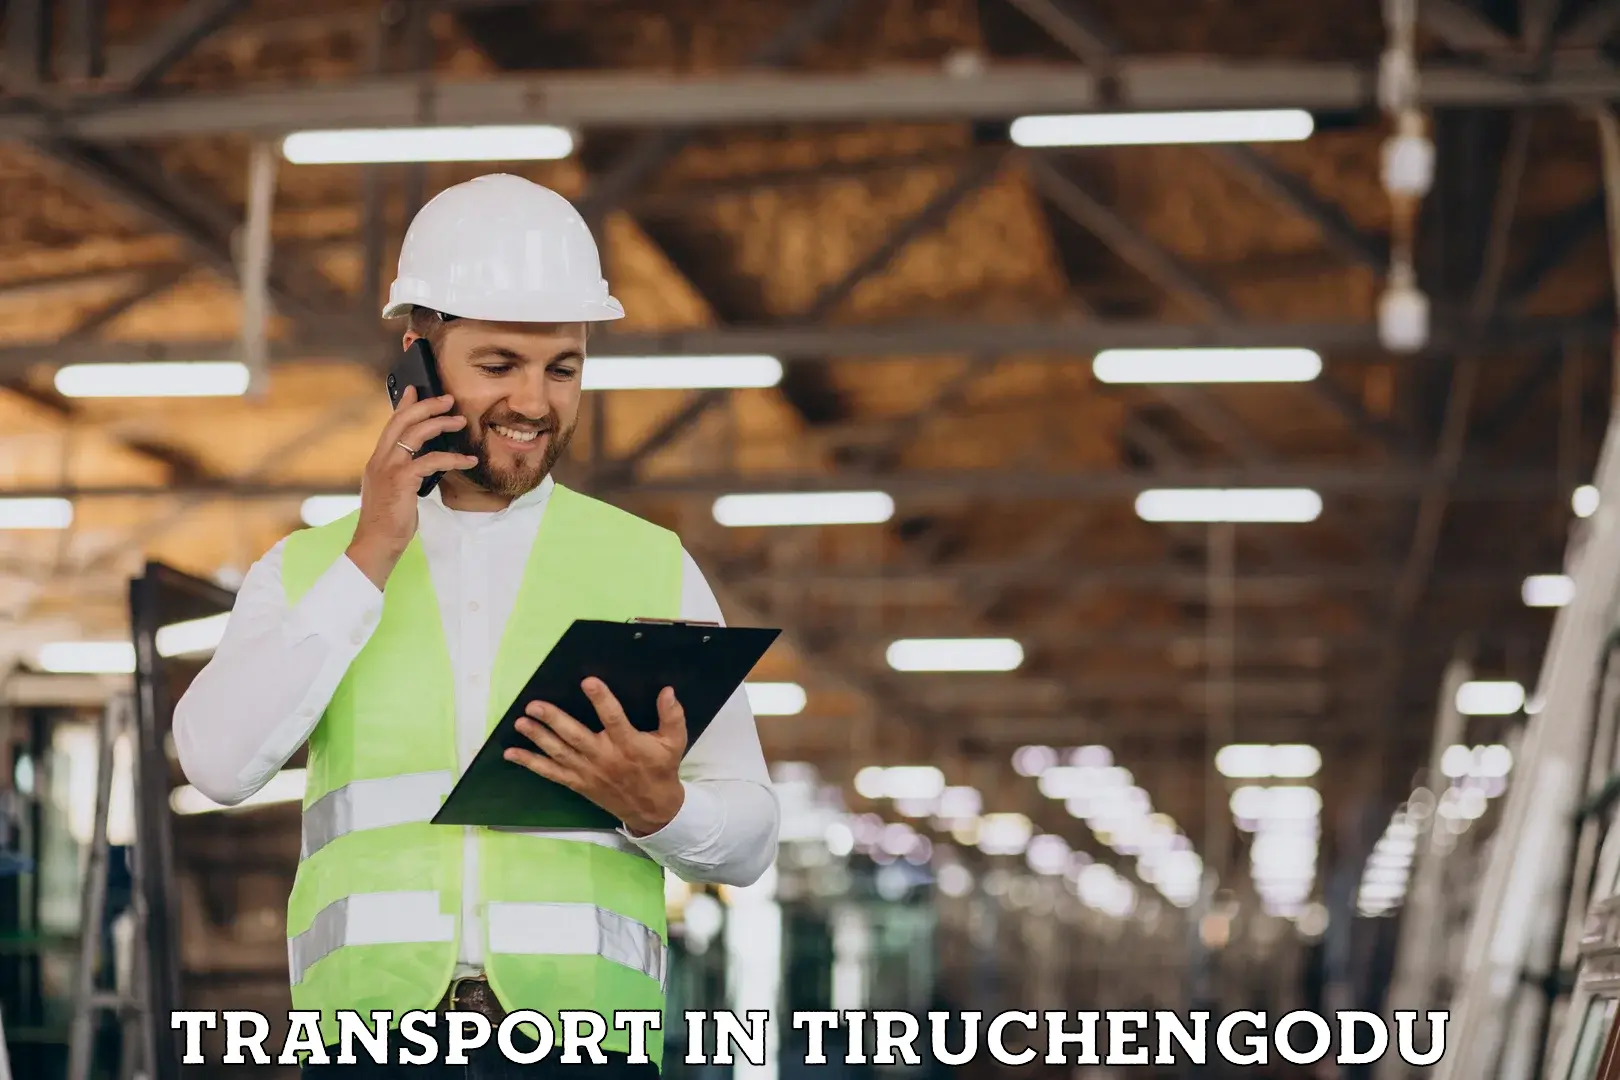 Furniture transport service in Tiruchengodu